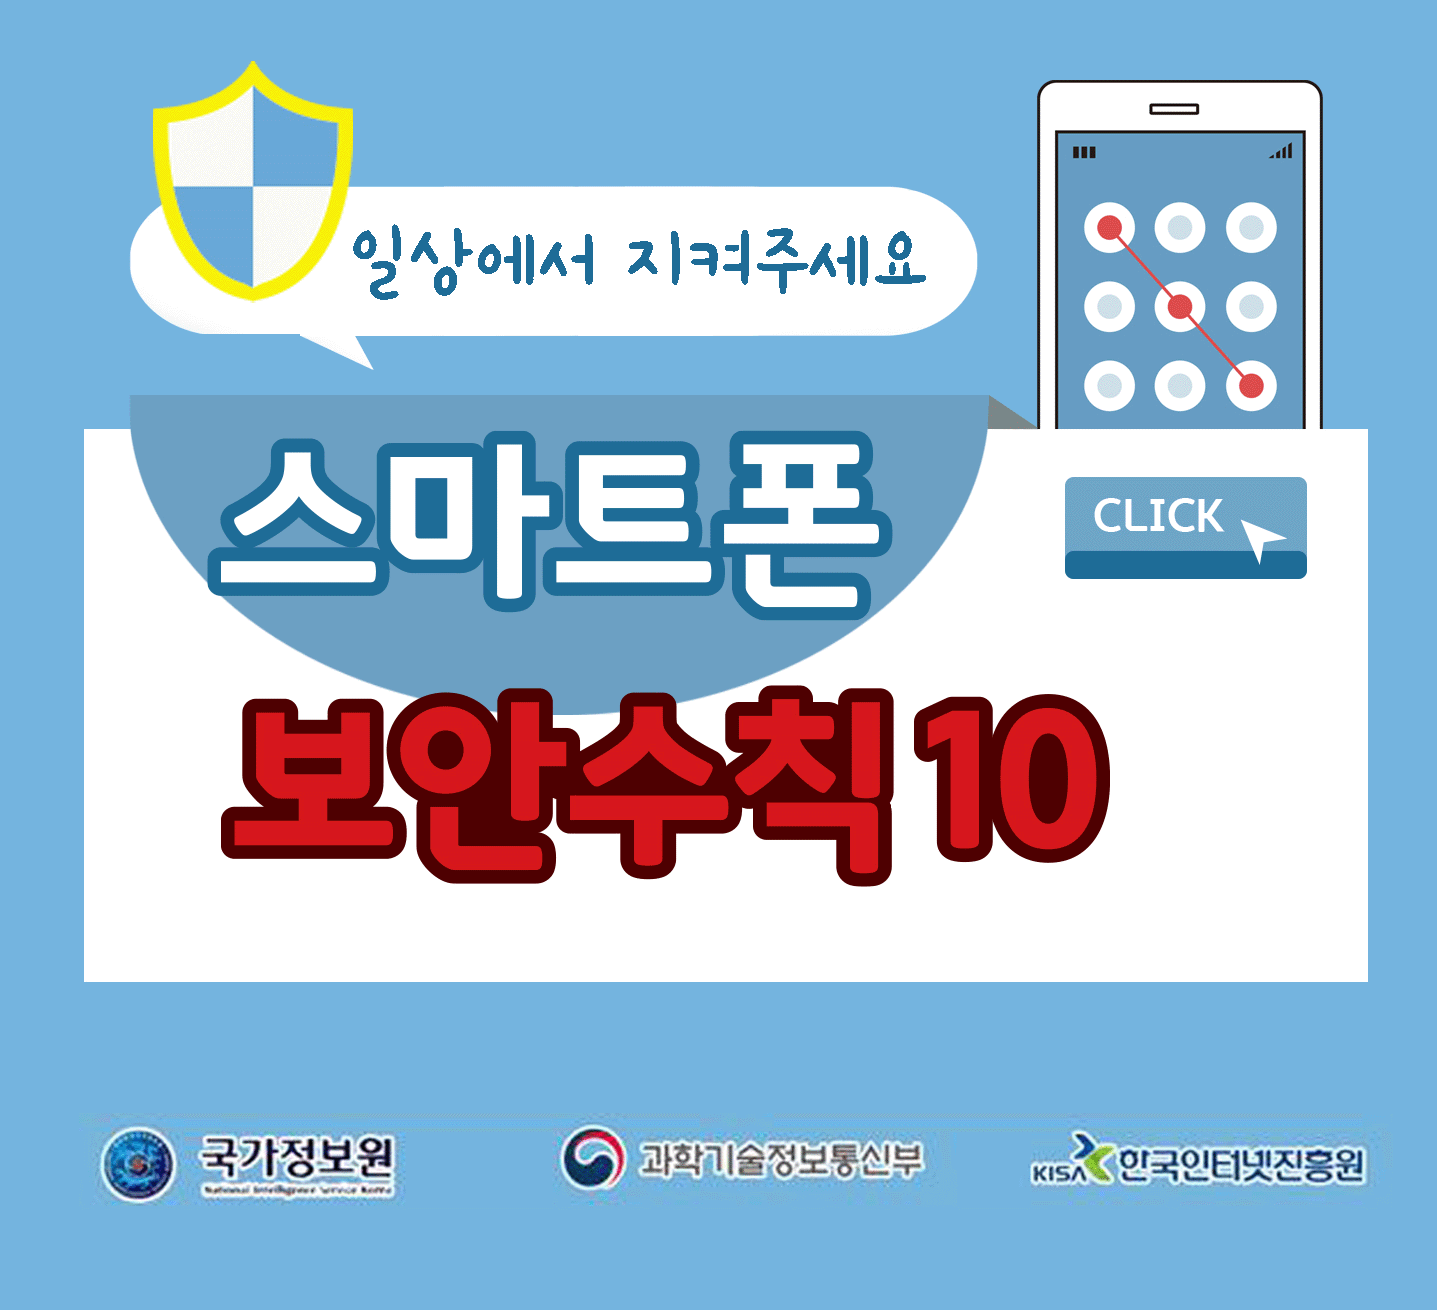 일상에서 지켜주세요
스마트폰 보안수칙 10 CLICK
국가정보원, 과학기술정보통신부, 한국인터넷진흥원;jsessionid=55C64A0D92E3BBD435FECEFE0E6CCABB